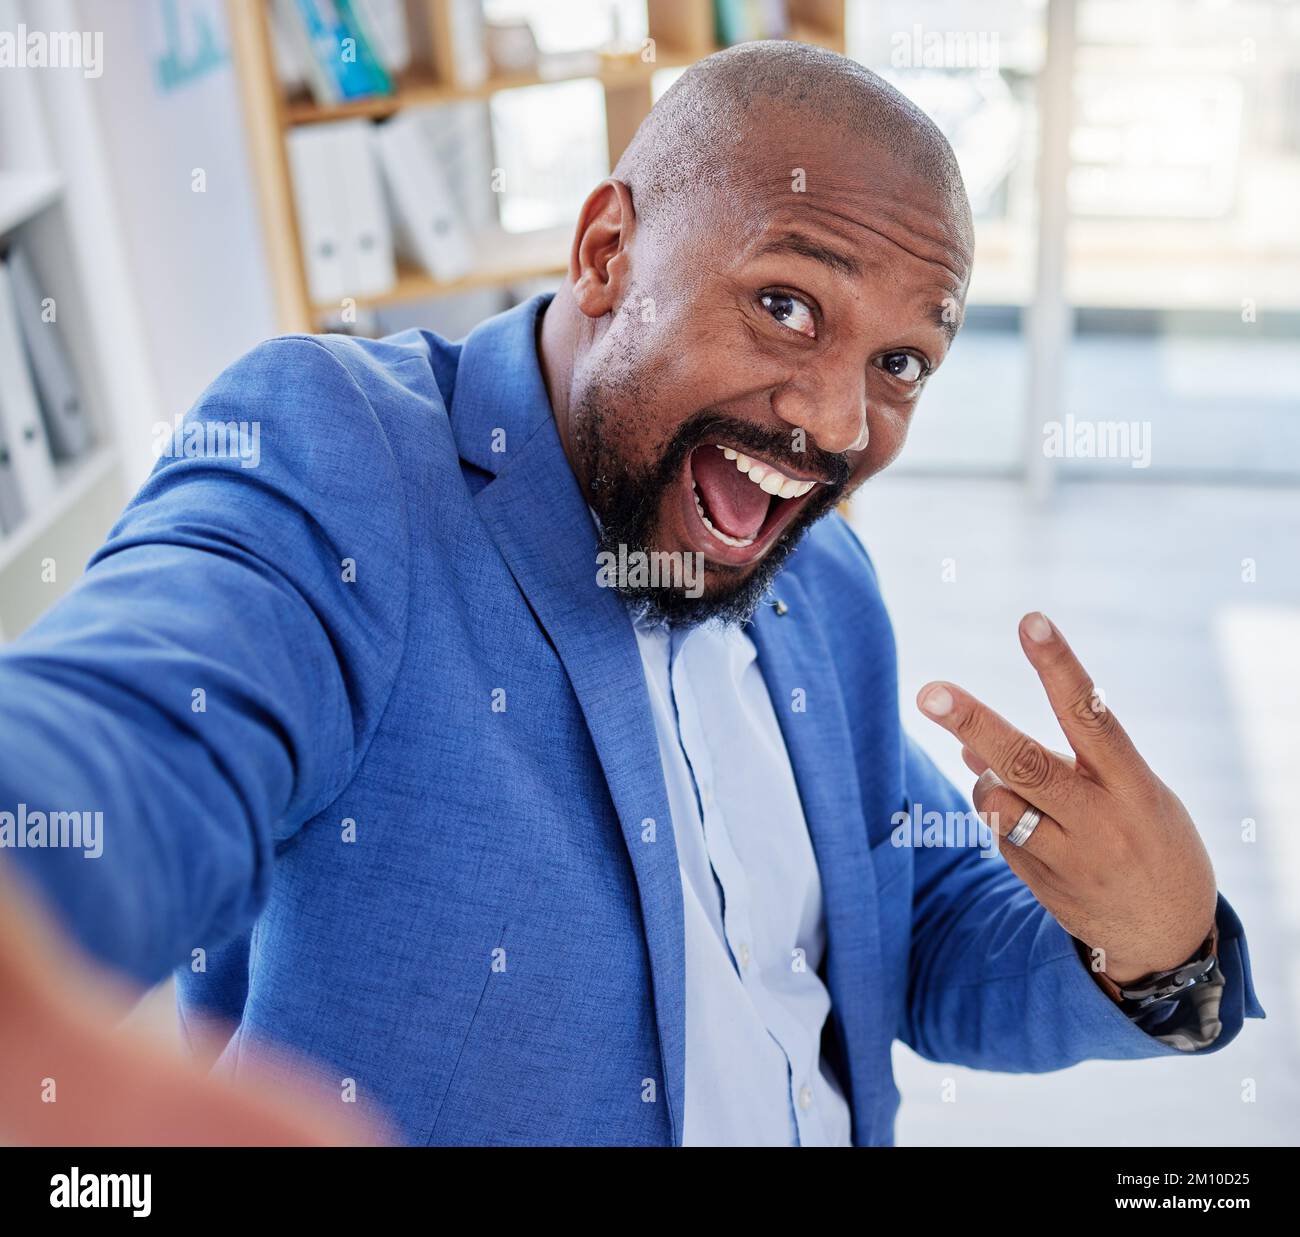 L'homme noir, le selfie et la paix sont des signes de réussite commerciale, tout en étant enthousiasmés par les publications sur les réseaux sociaux ou les blogs sur les réussites ou les victoires Banque D'Images